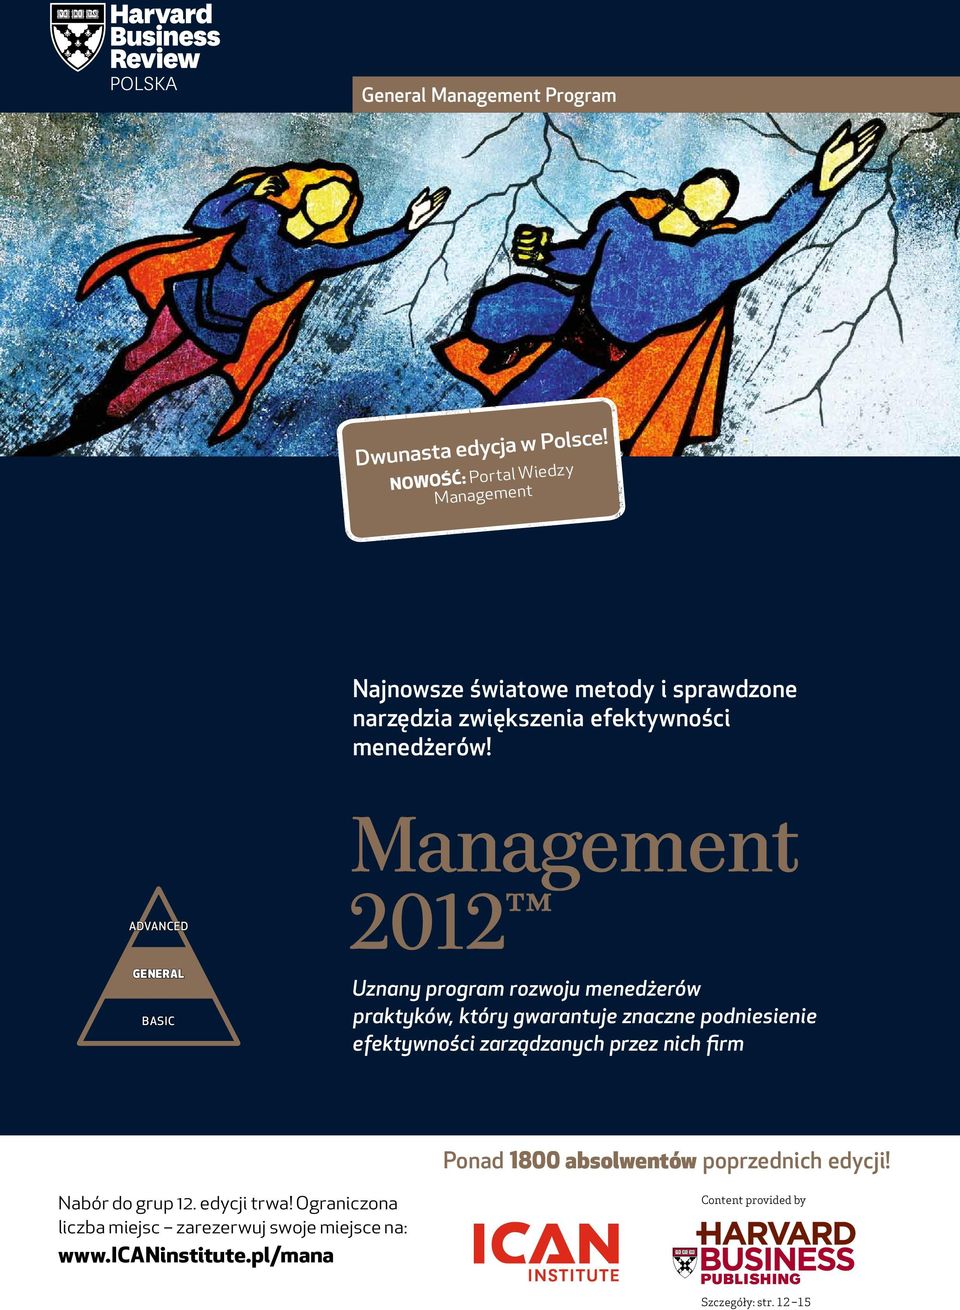 Advanced General Basic Management 2012 Uznany program rozwoju menedżerów praktyków, który gwarantuje znaczne podniesienie